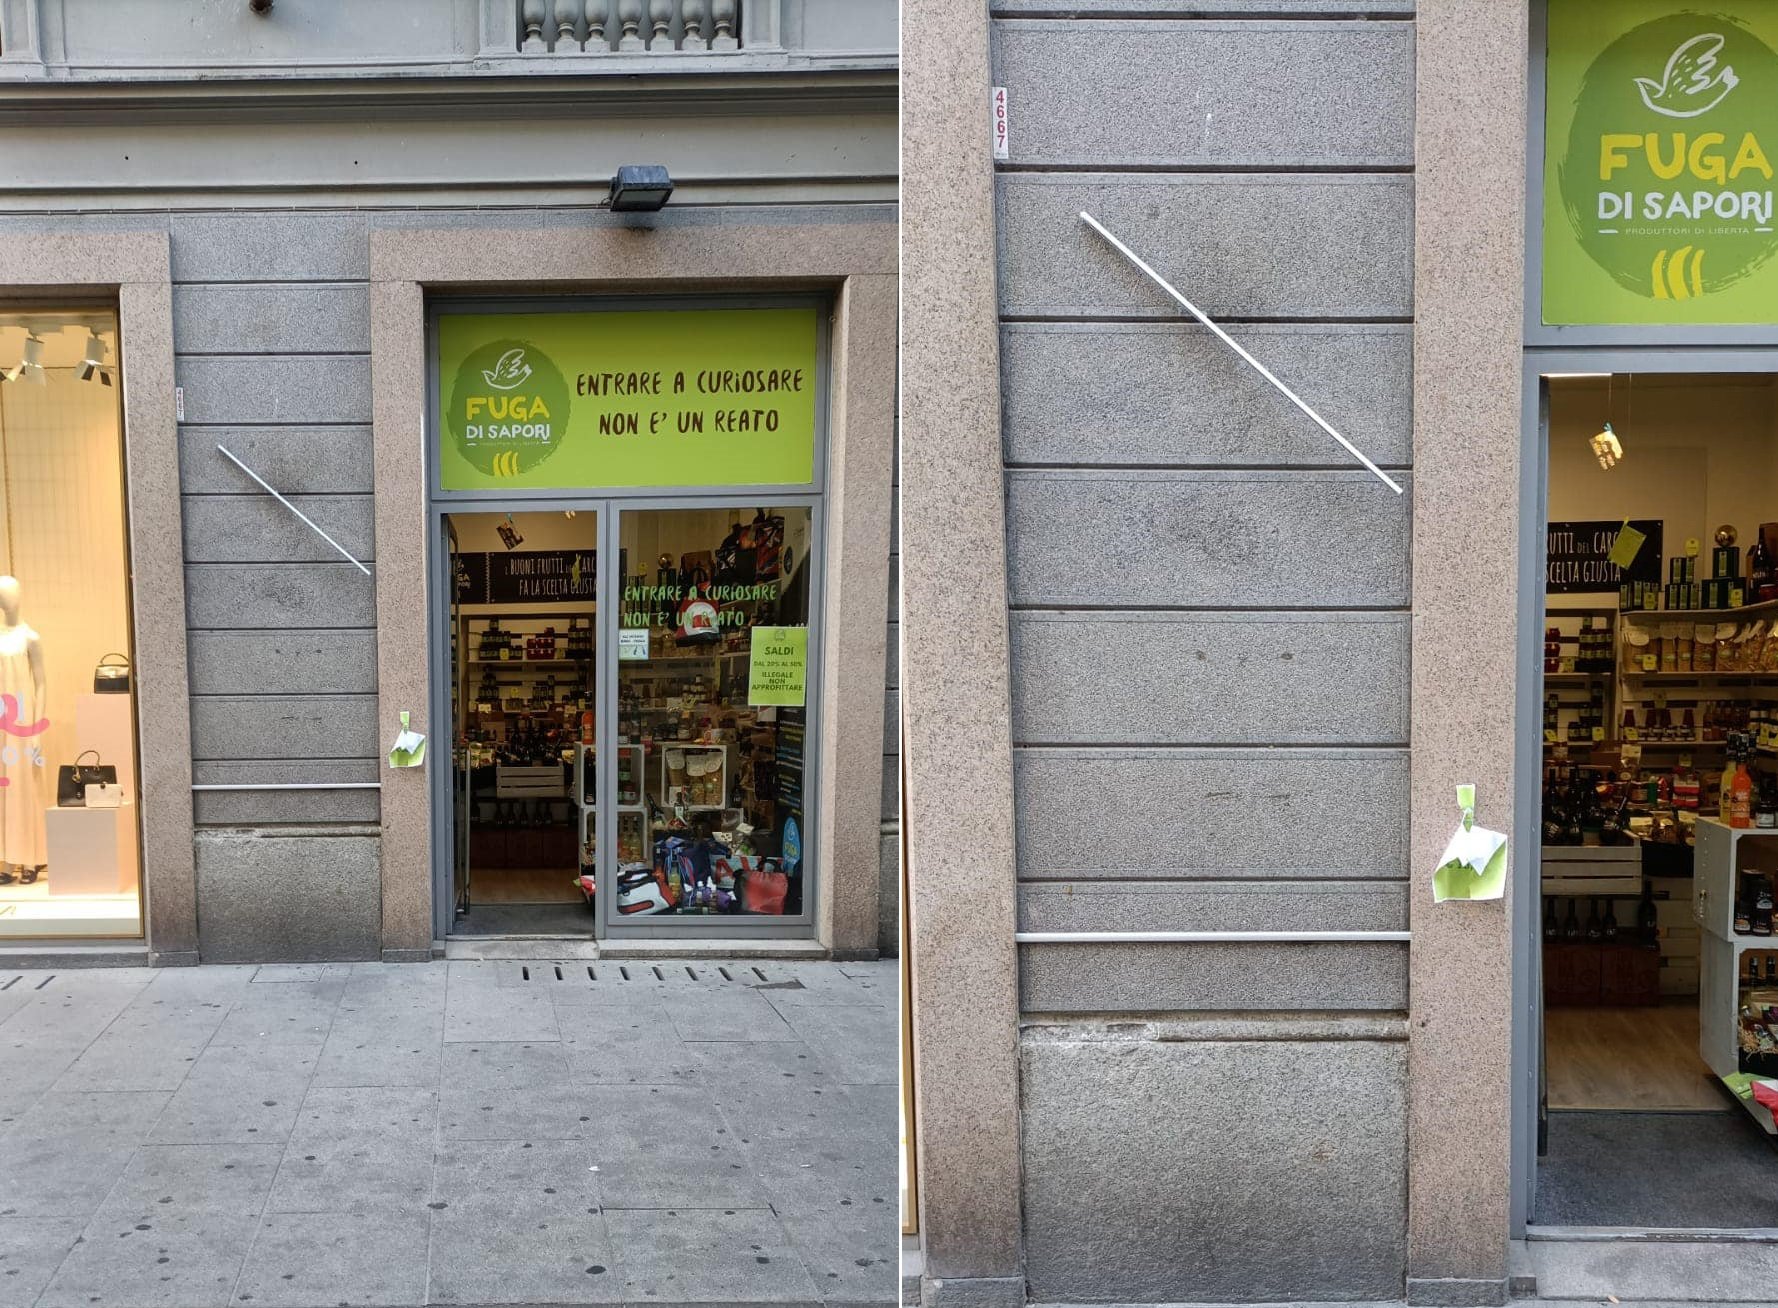 Atto vandalico a Fuga di Sapori in Corso Roma: distrutta l’insegna della bottega